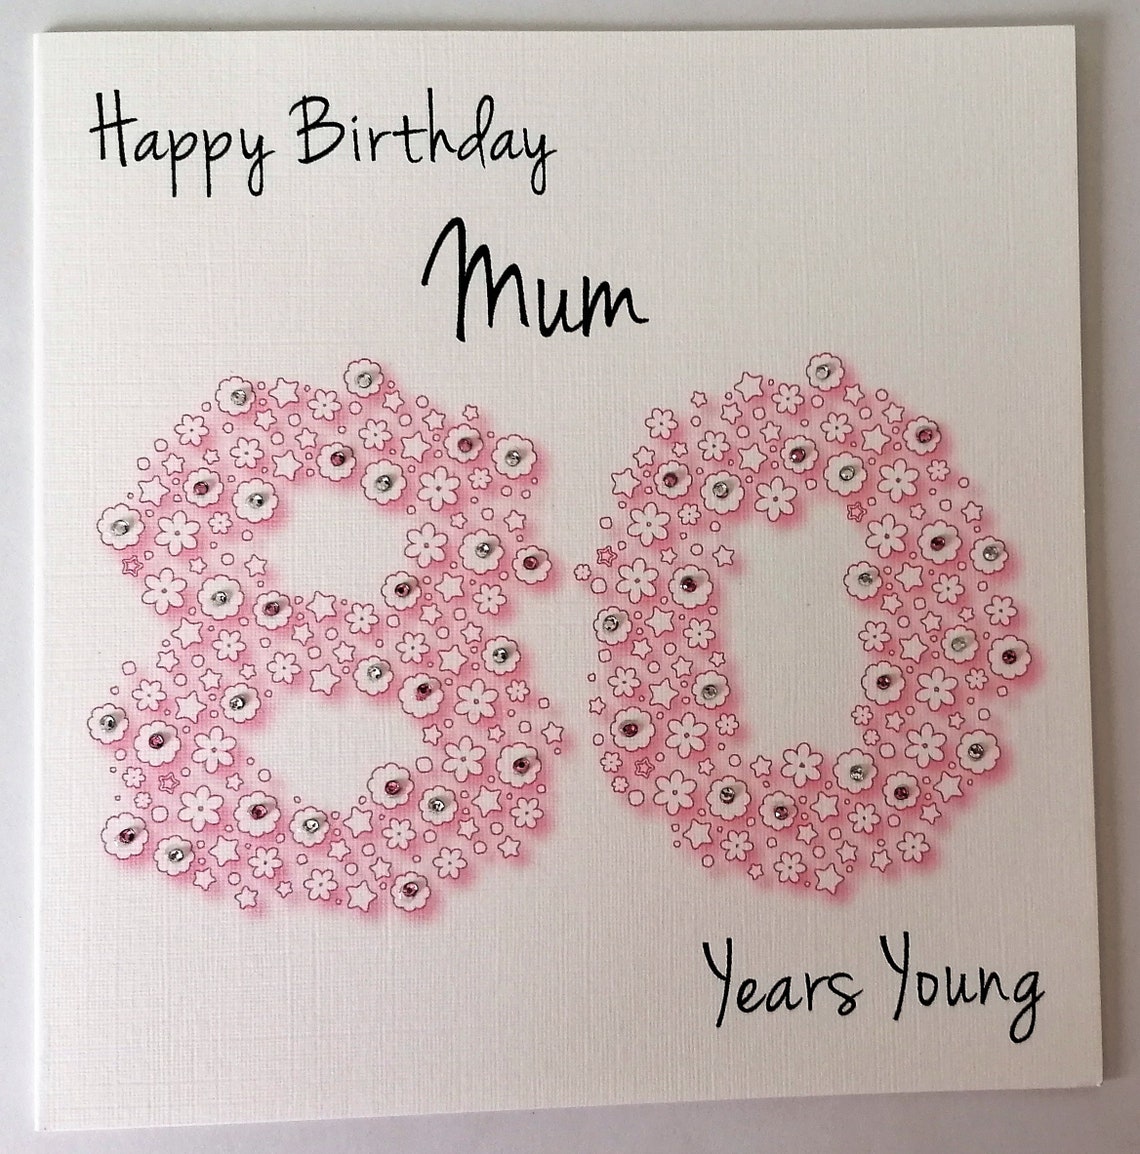 Happy 80th Birthday Mum Card Etsy Uk 